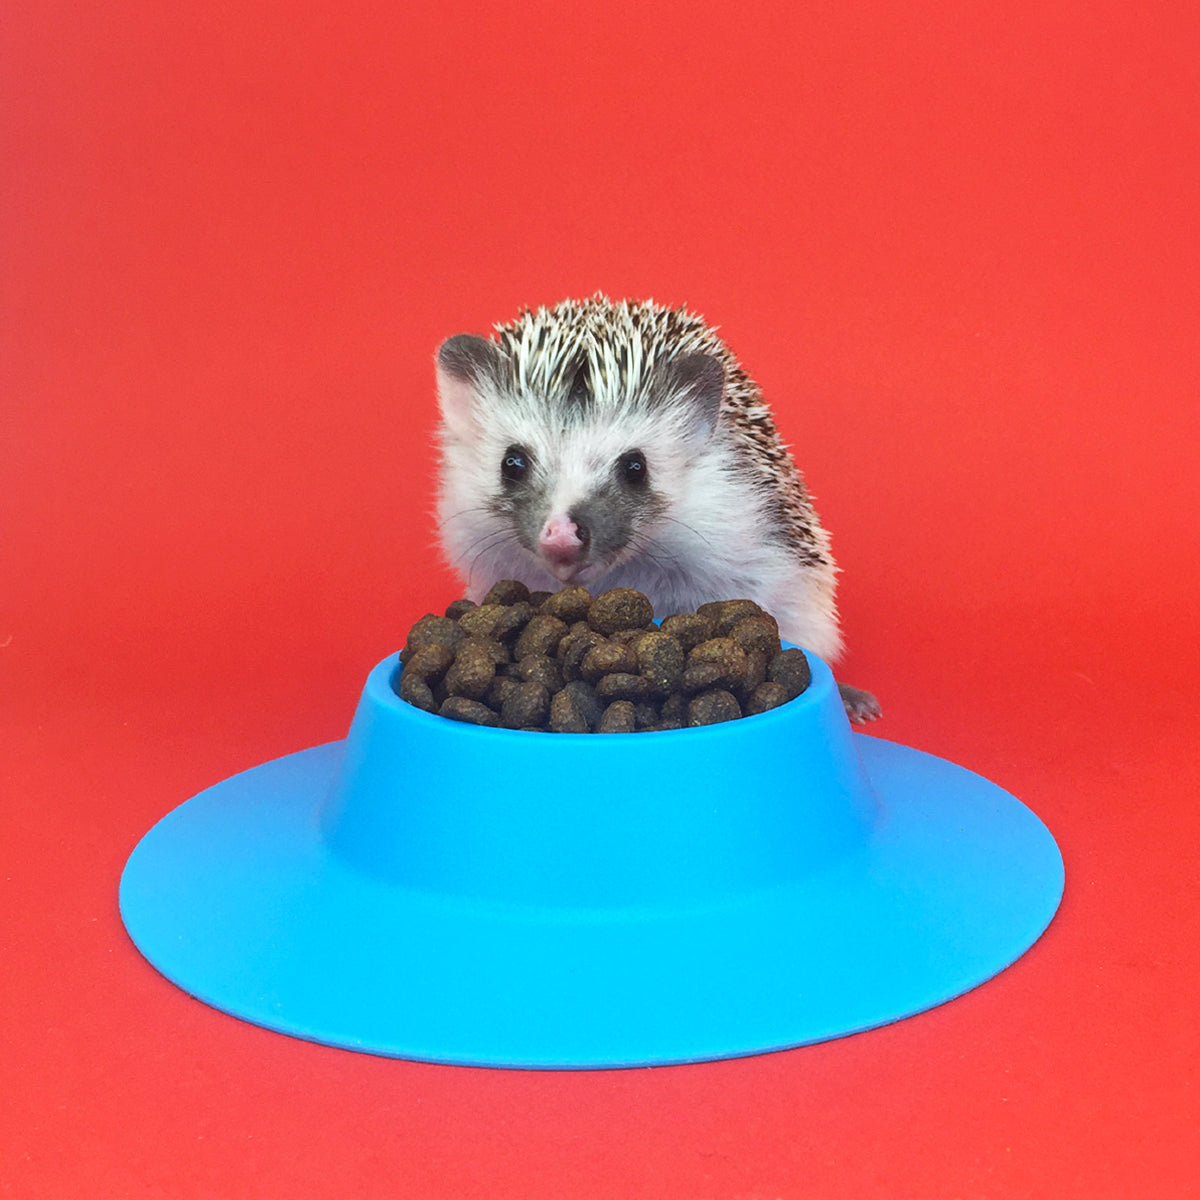 Sample - Really Good Hedgehog Food